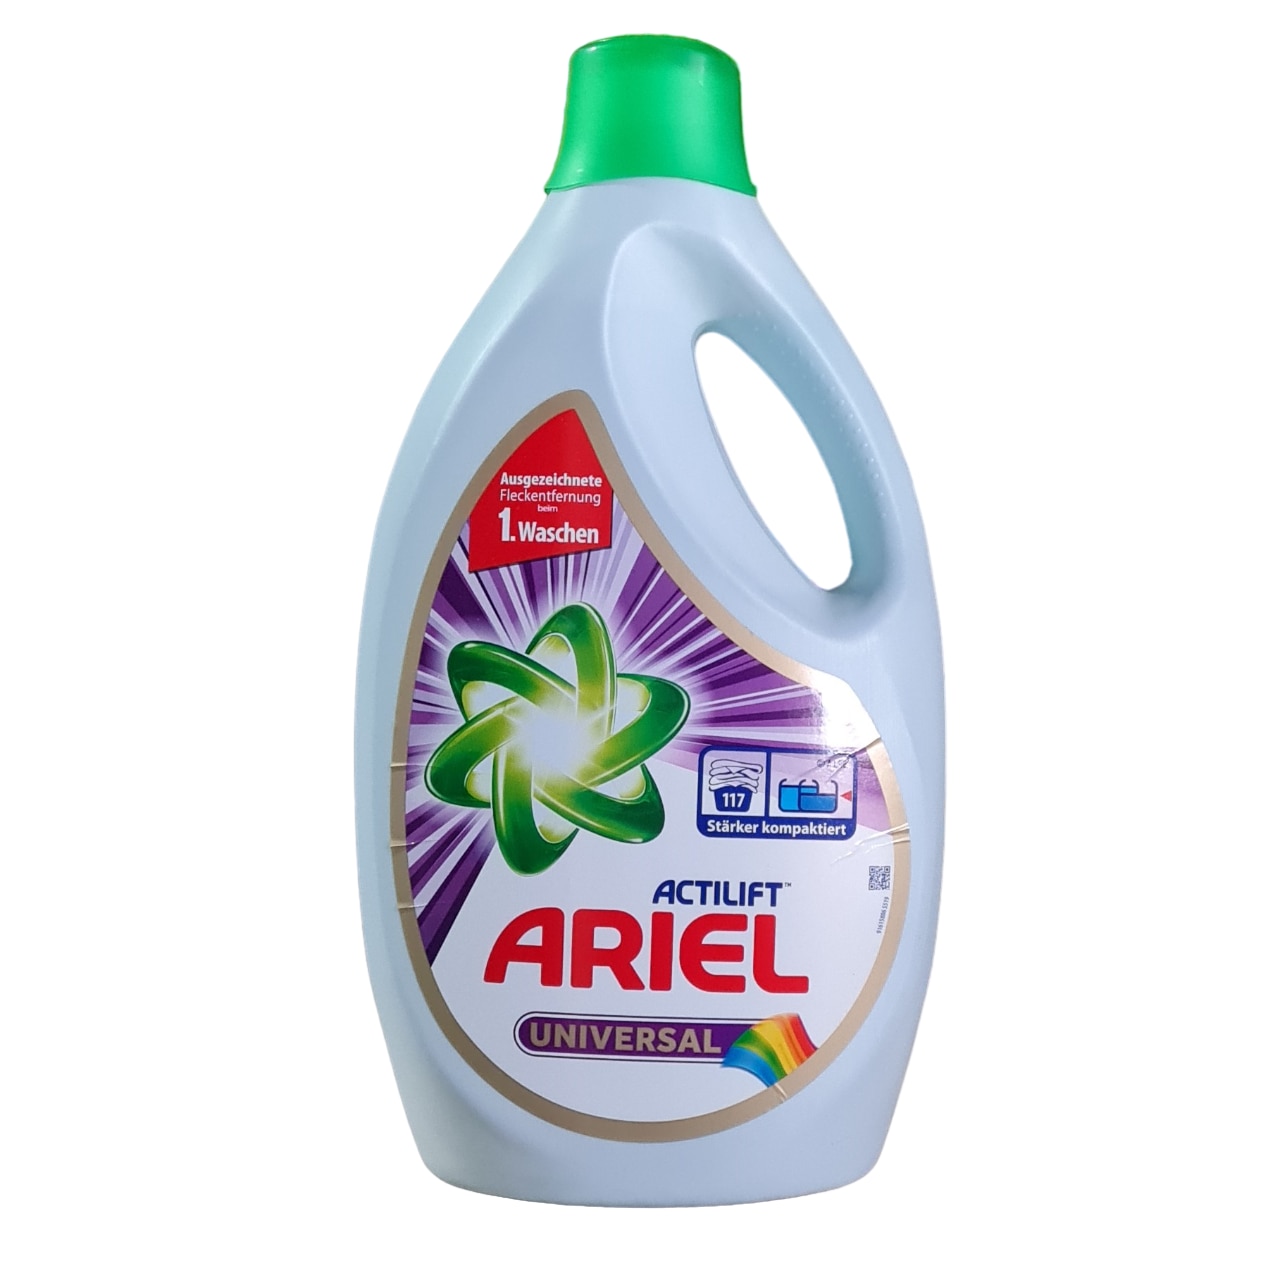 Ariel - Détergent liquide - Alpine - 4,95 L (90 lavages)